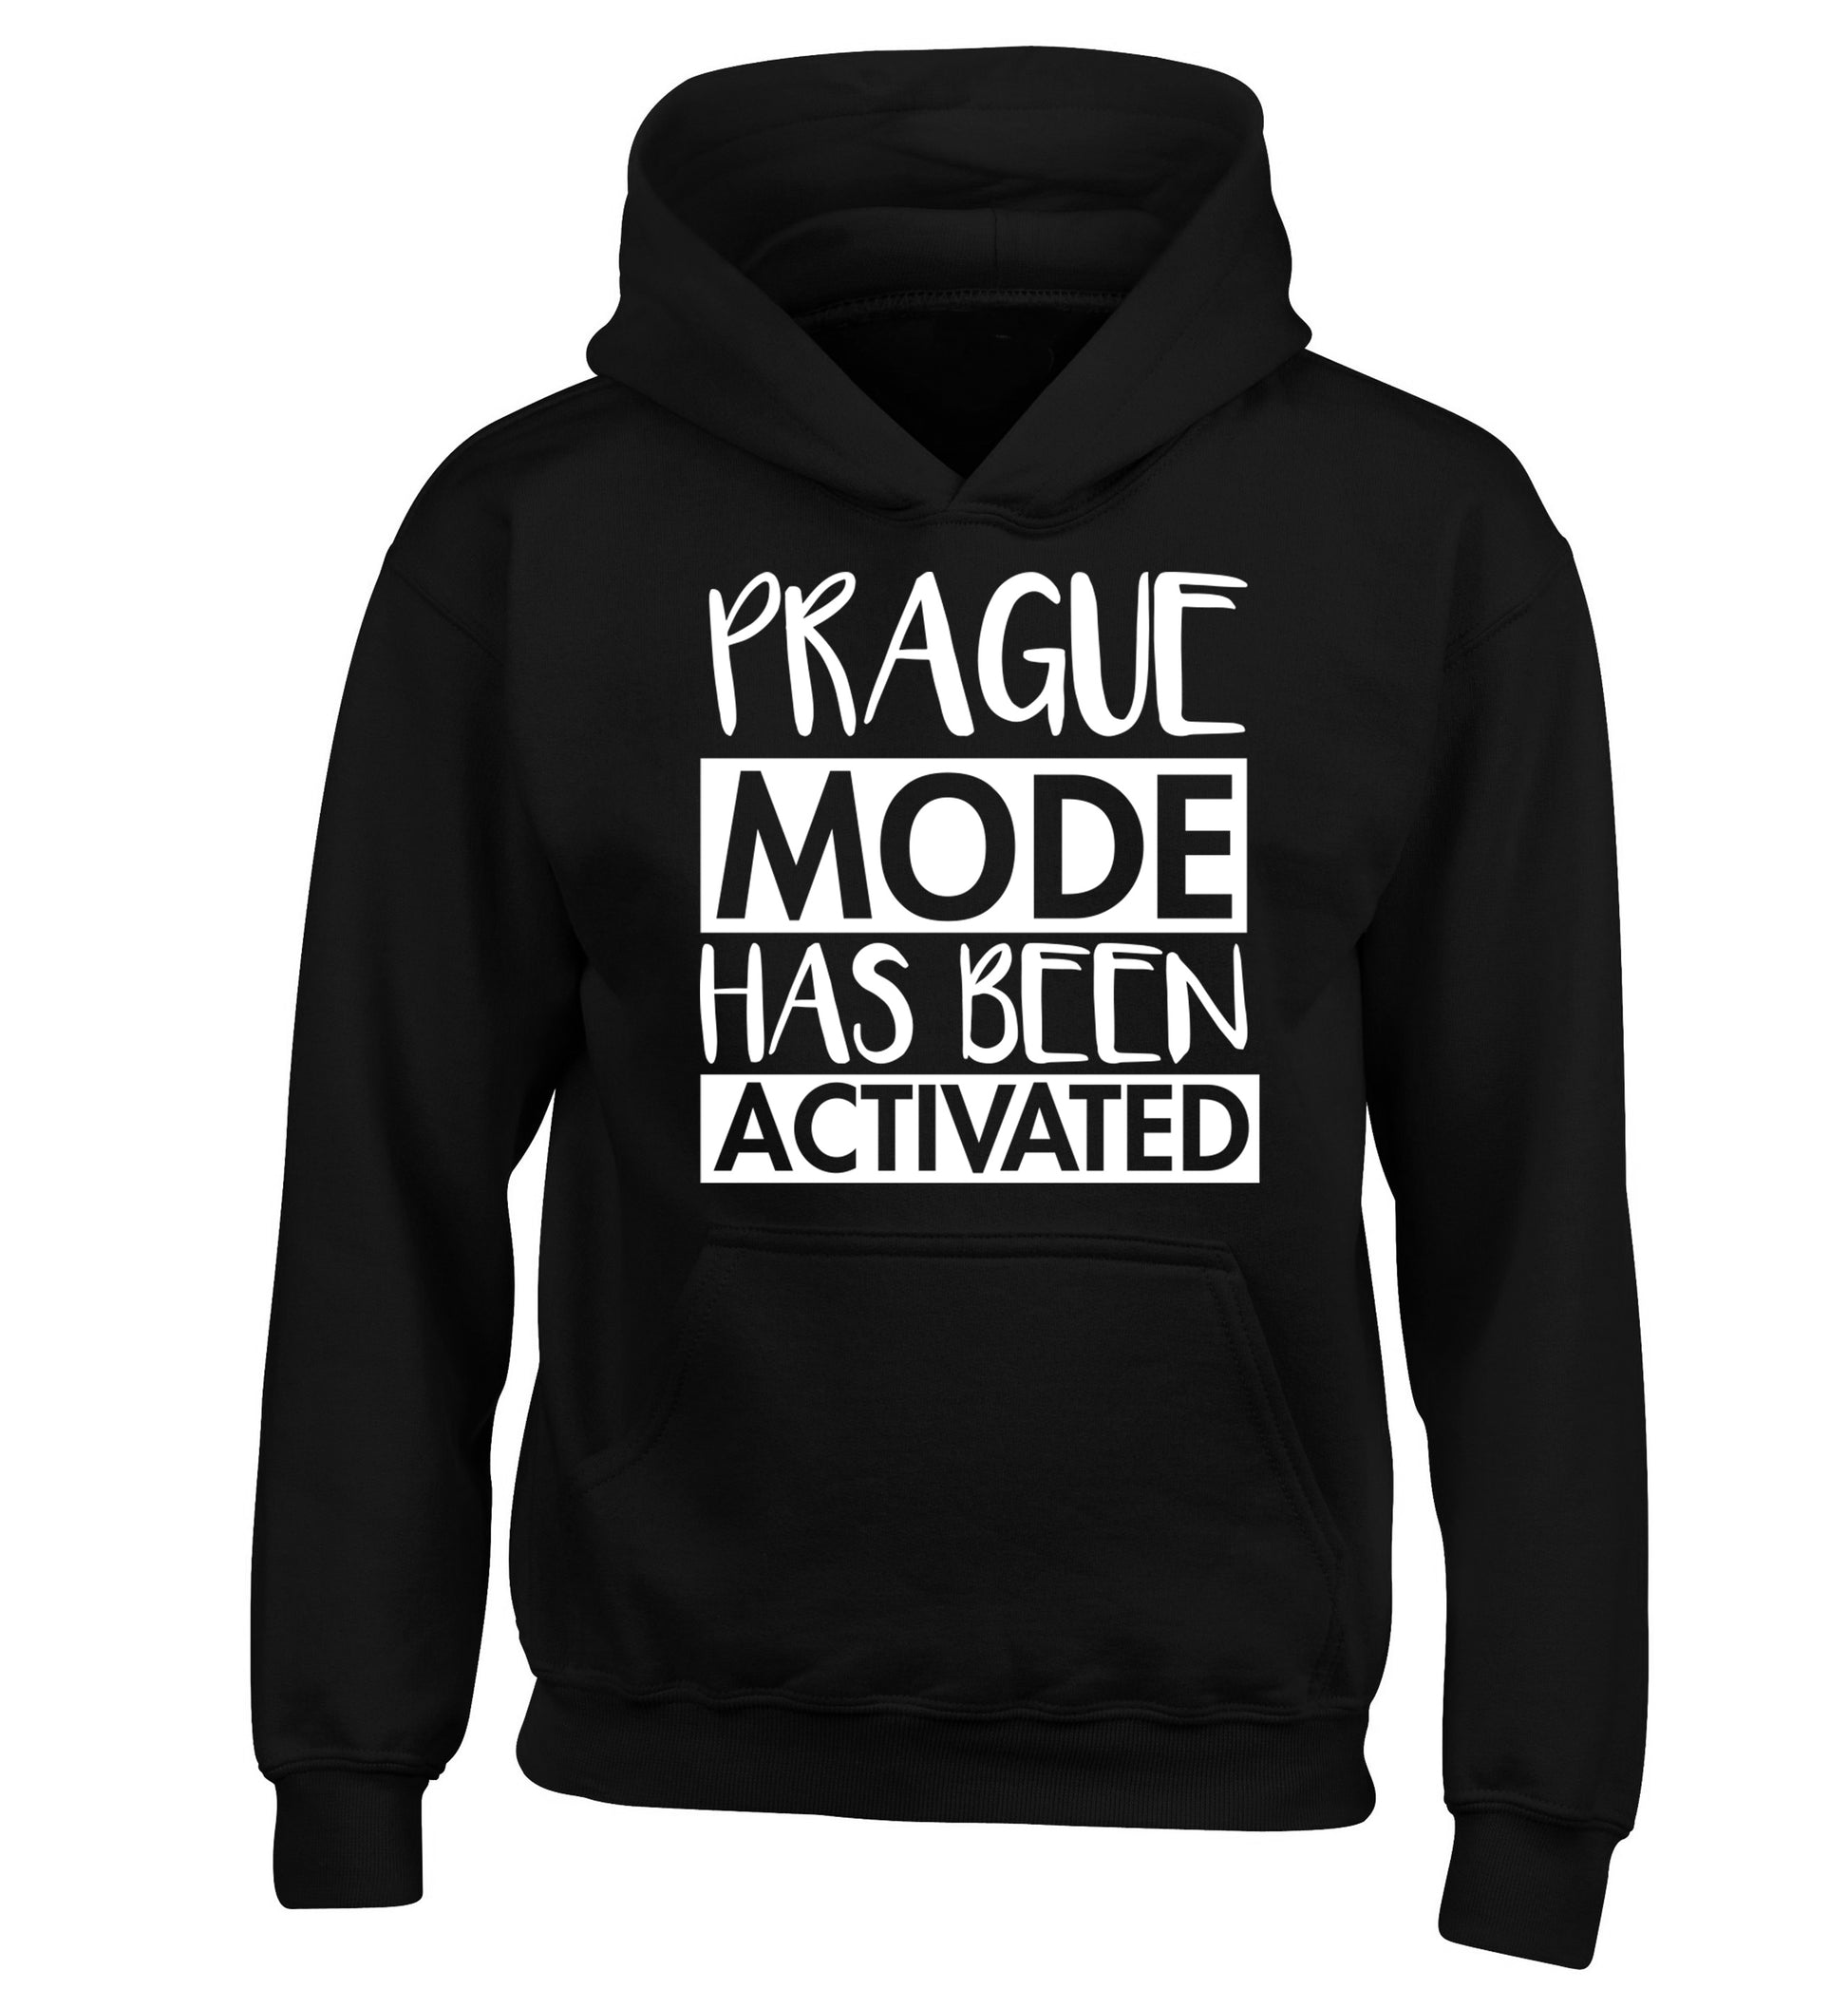 Prague mode has been activated children's black hoodie 12-13 Years